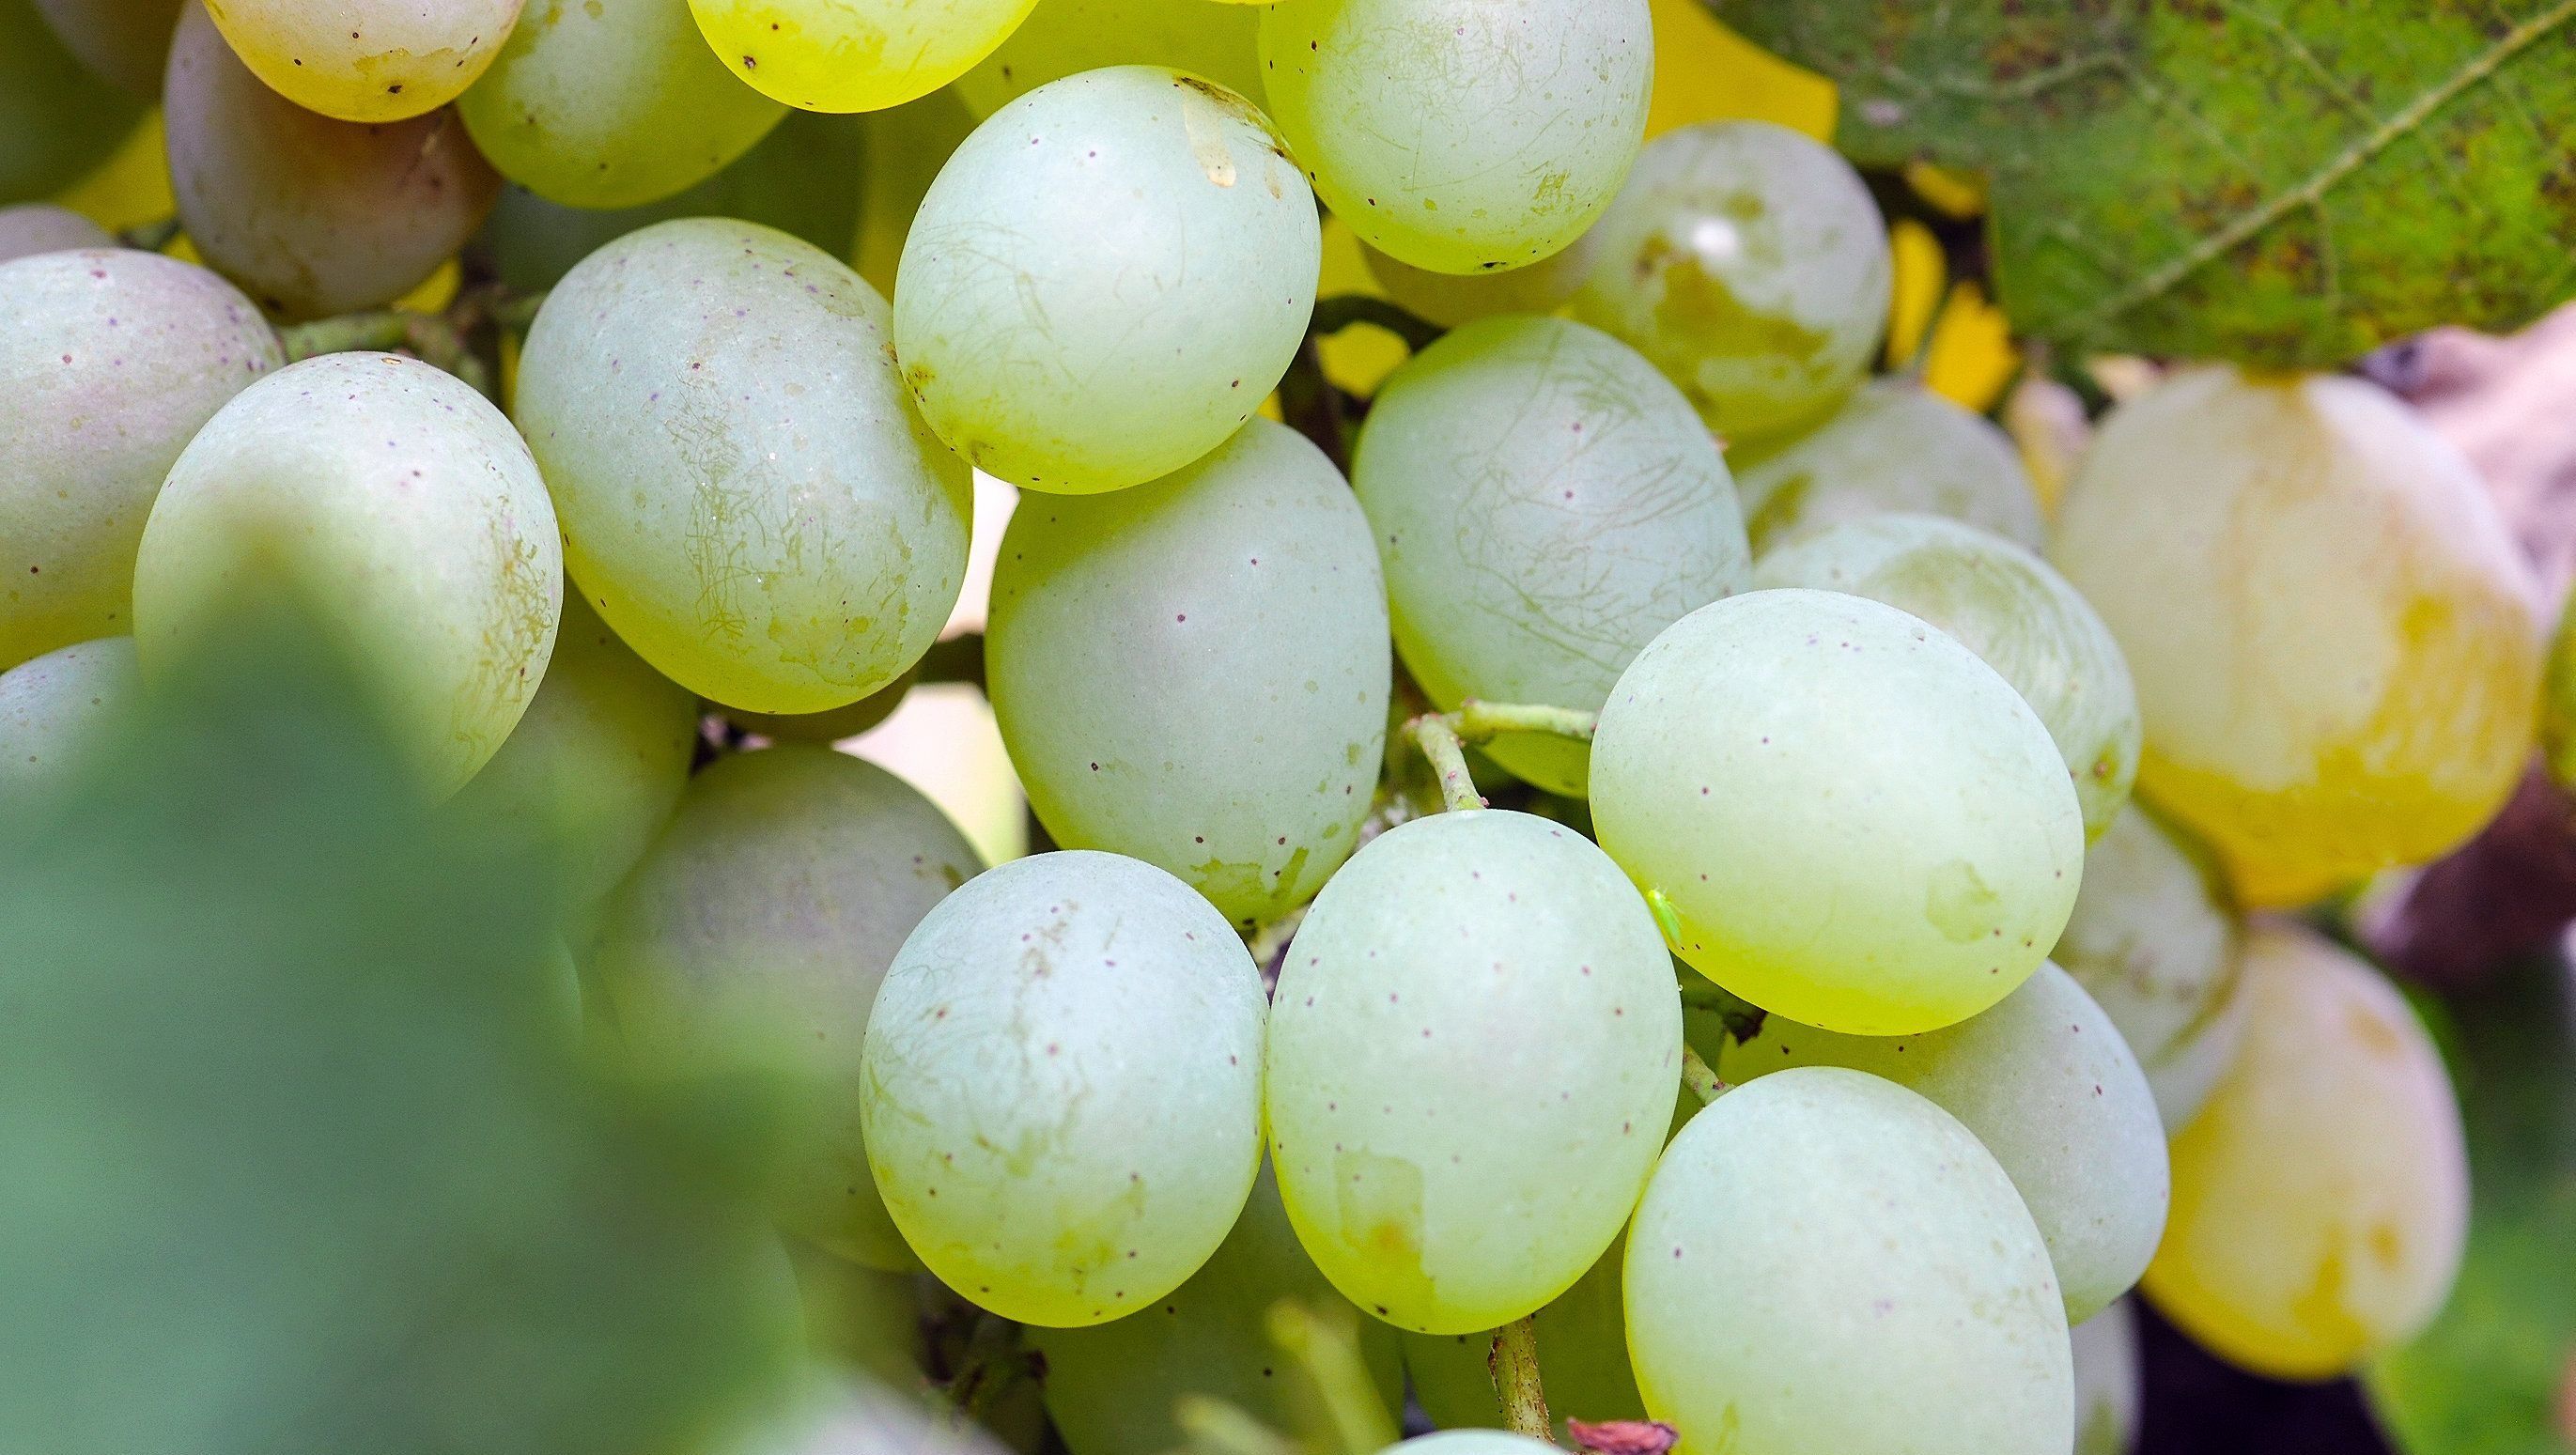 Megbetegedett a szőlő egy része a Hajós-Bajai borvidéken